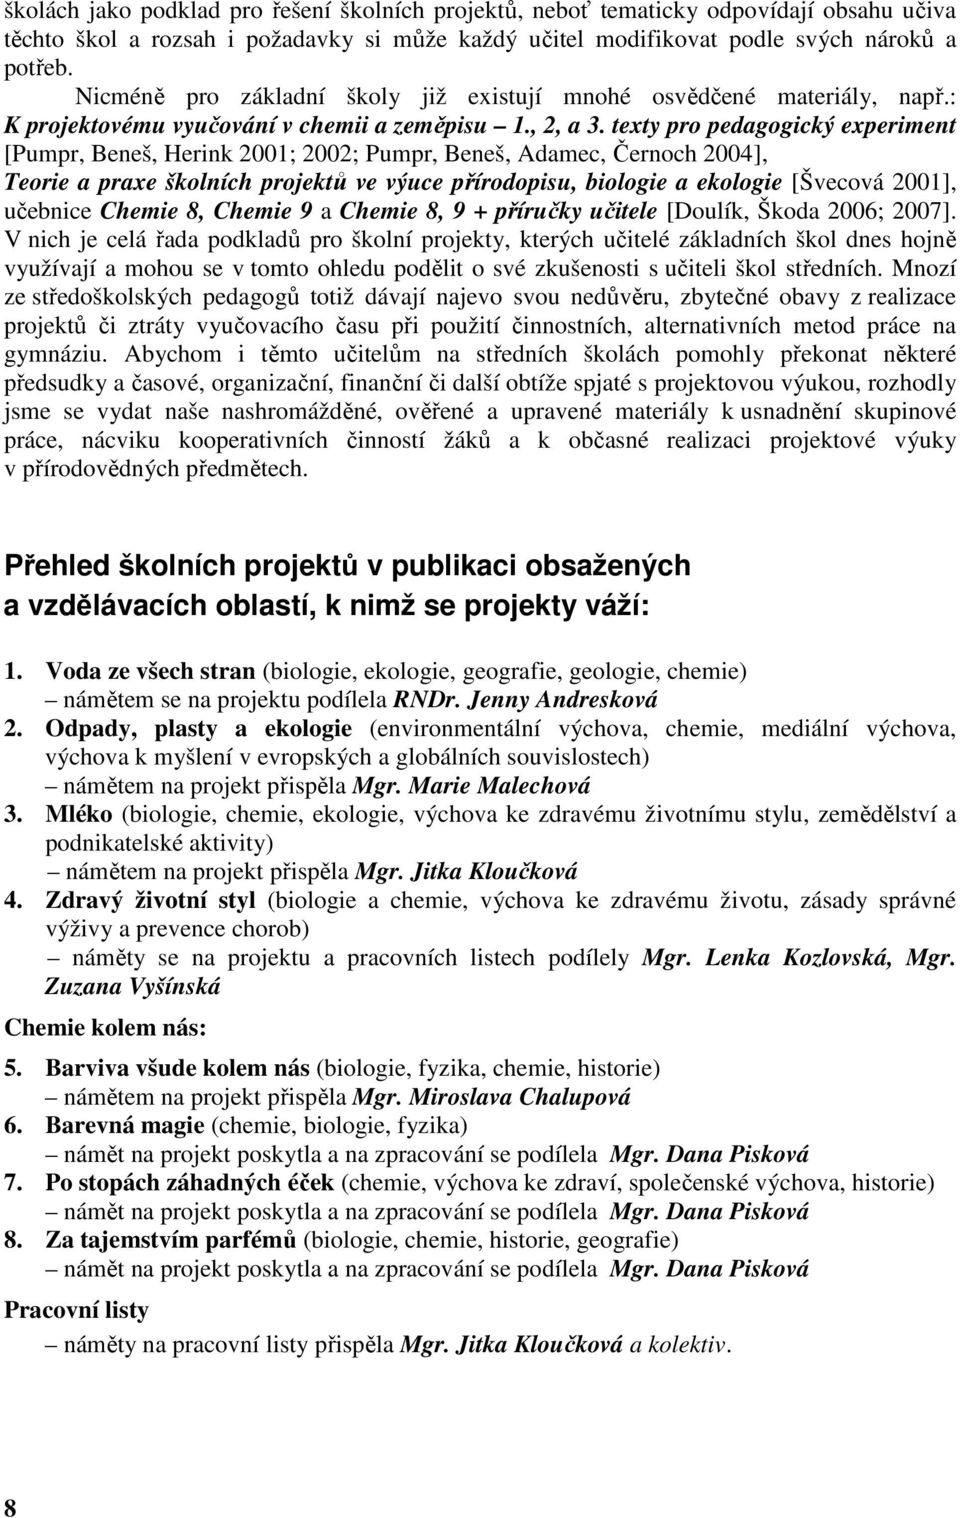 texty pro pedagogický experiment [Pumpr, Beneš, Herink 2001; 2002; Pumpr, Beneš, Adamec, Černoch 2004], Teorie a praxe školních projektů ve výuce přírodopisu, biologie a ekologie [Švecová 2001],